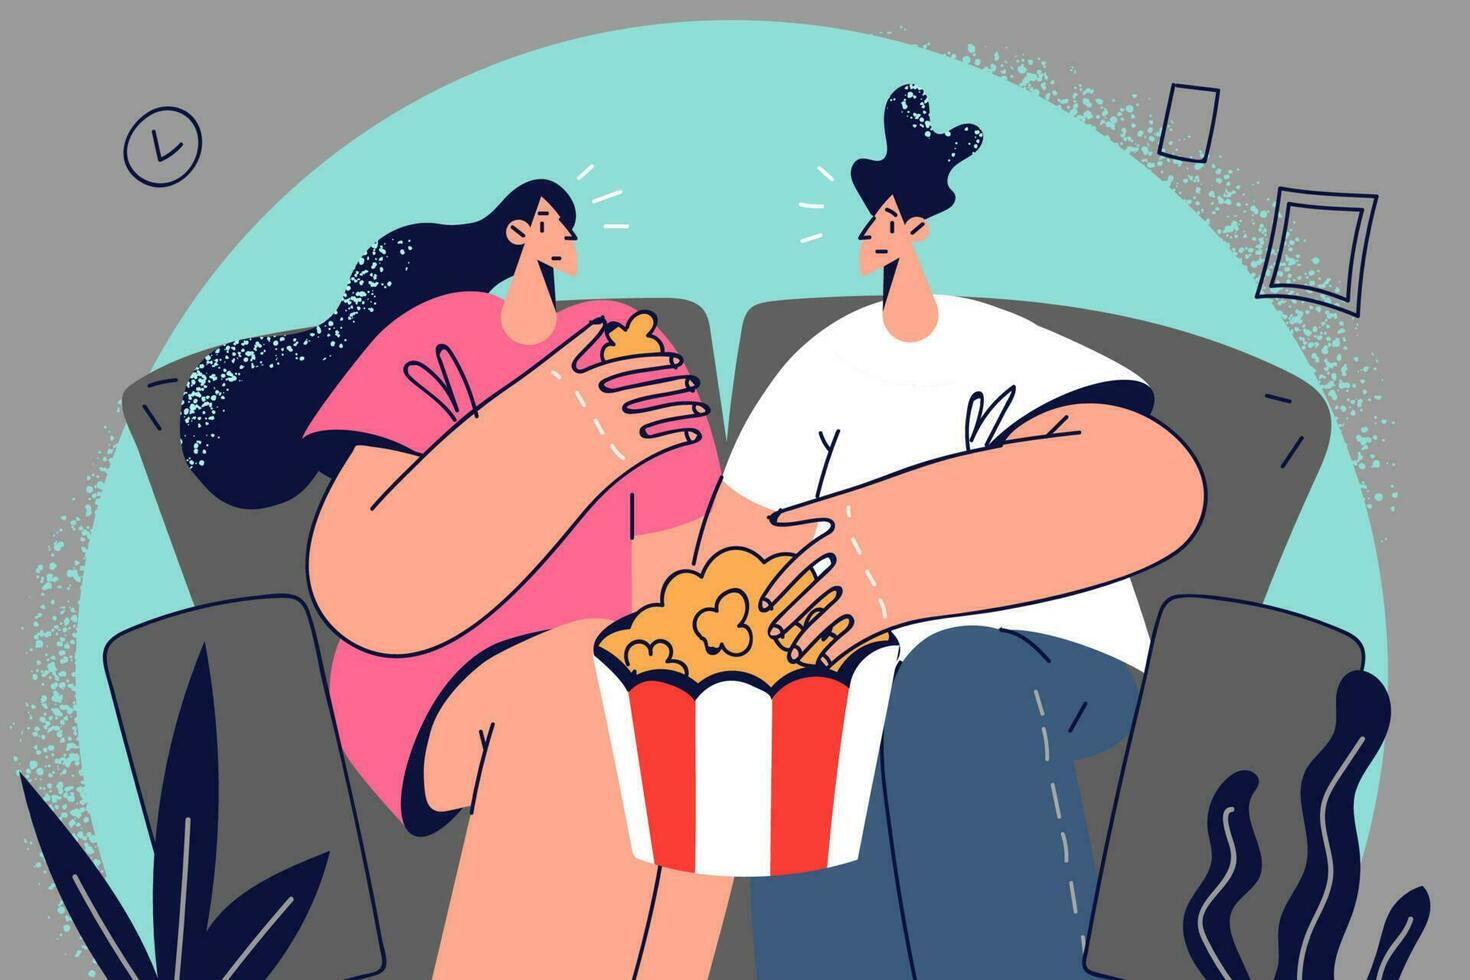 contento Pareja sentado en sofá comiendo palomitas de maiz acecho película juntos. sonriente hombre y mujer relajante en sofá disfrutando cine. vector ilustración.